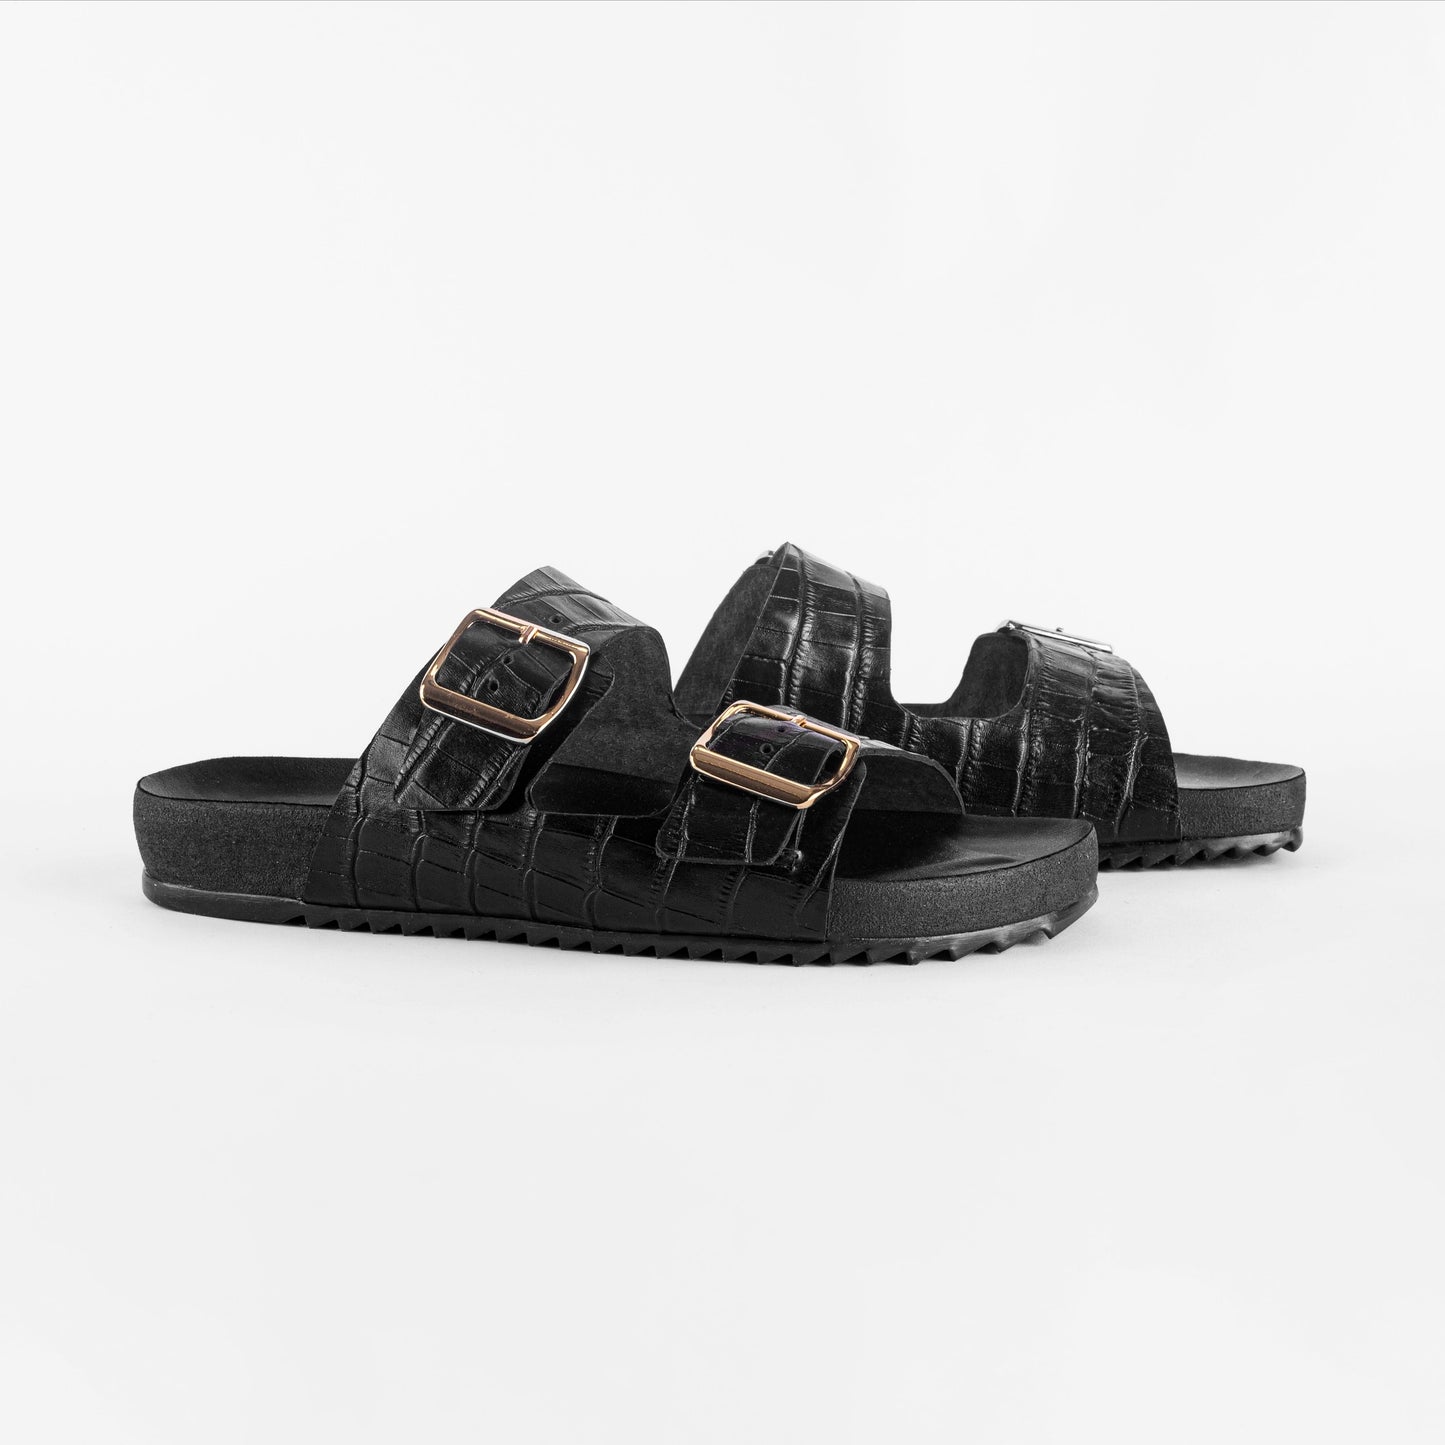 Vinci Shoes Cuba Croc-Embossed Black Sandals